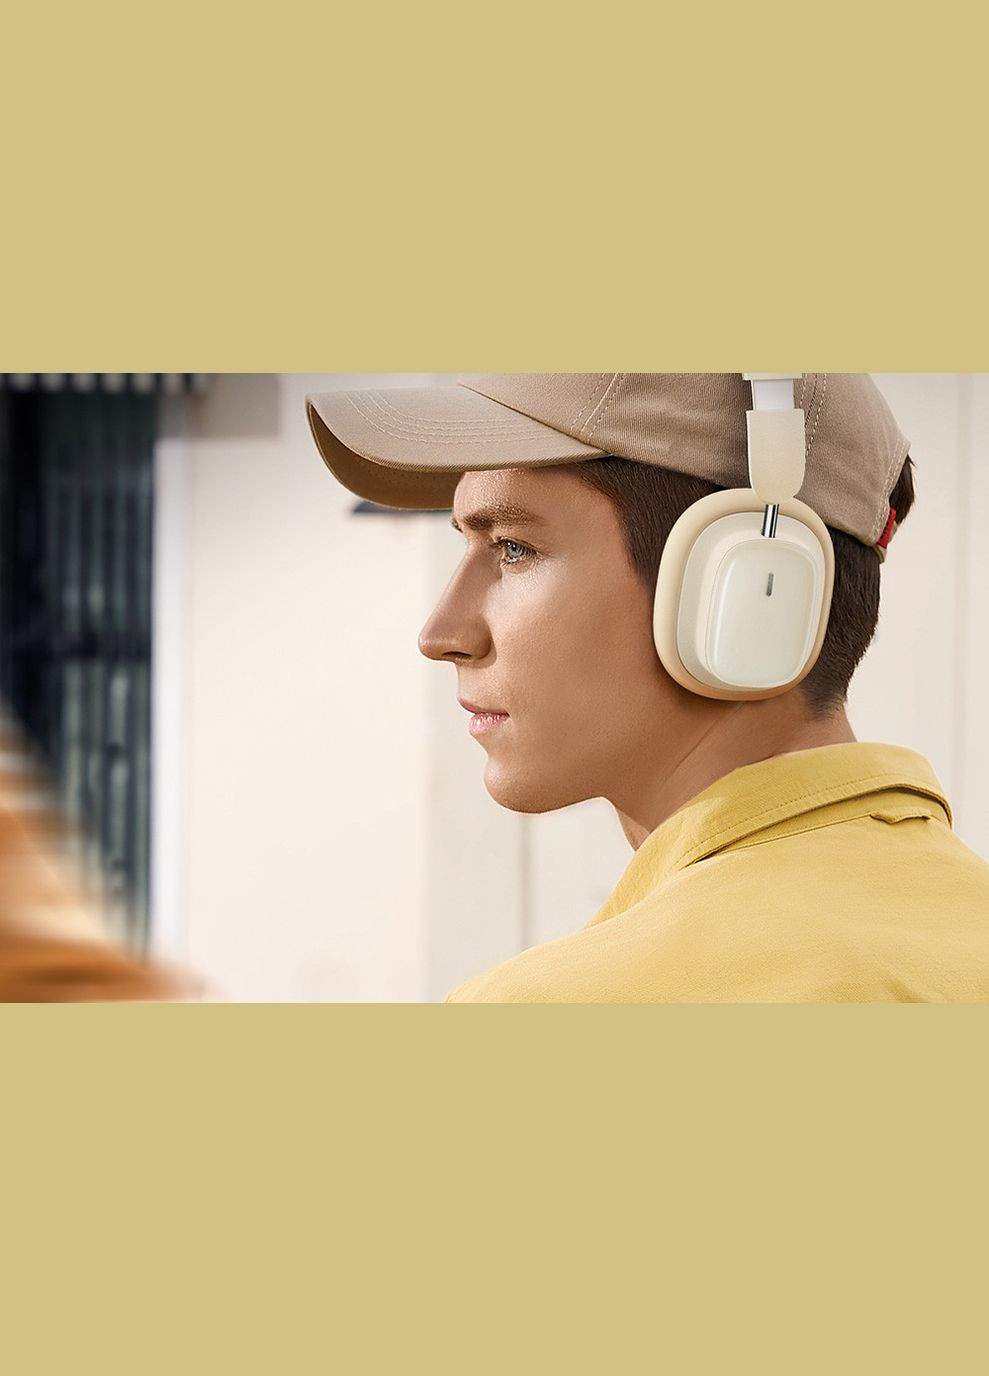 Беспроводные наушники Bowie H1i NoiseCancellation Wireless Headphones полноразмерные белые Baseus (283375185)